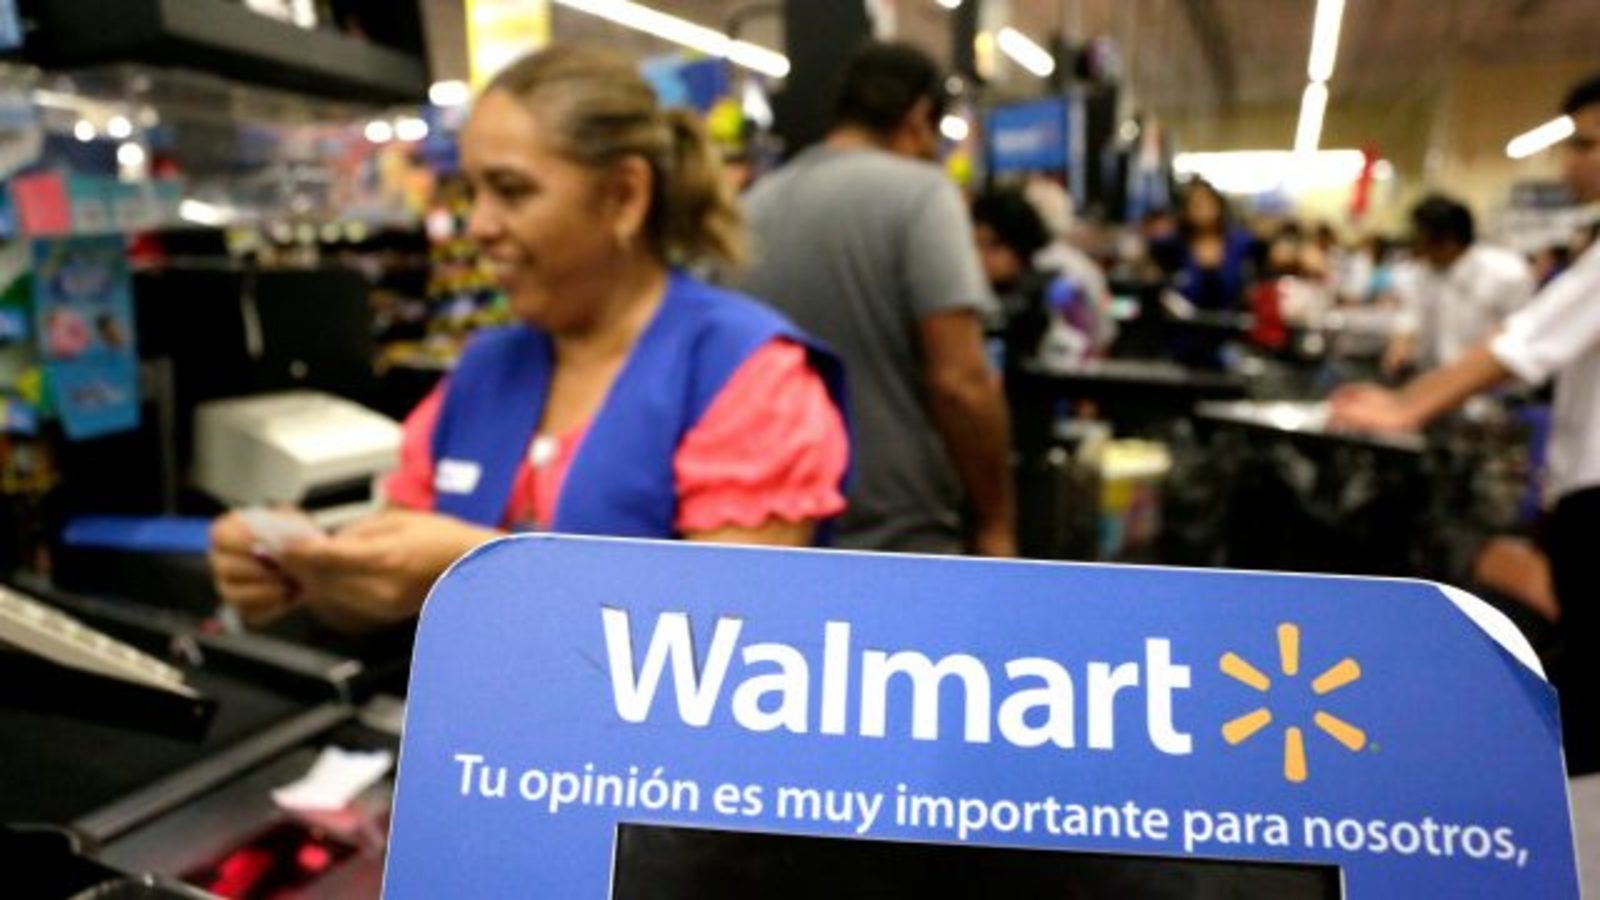 Walmart de México cuenta con 121 contratos colectivos en diez estados del país y ayer amenazaron con irse a huelga sino reciben un incremento en su salario, una petición del 20 por ciento.